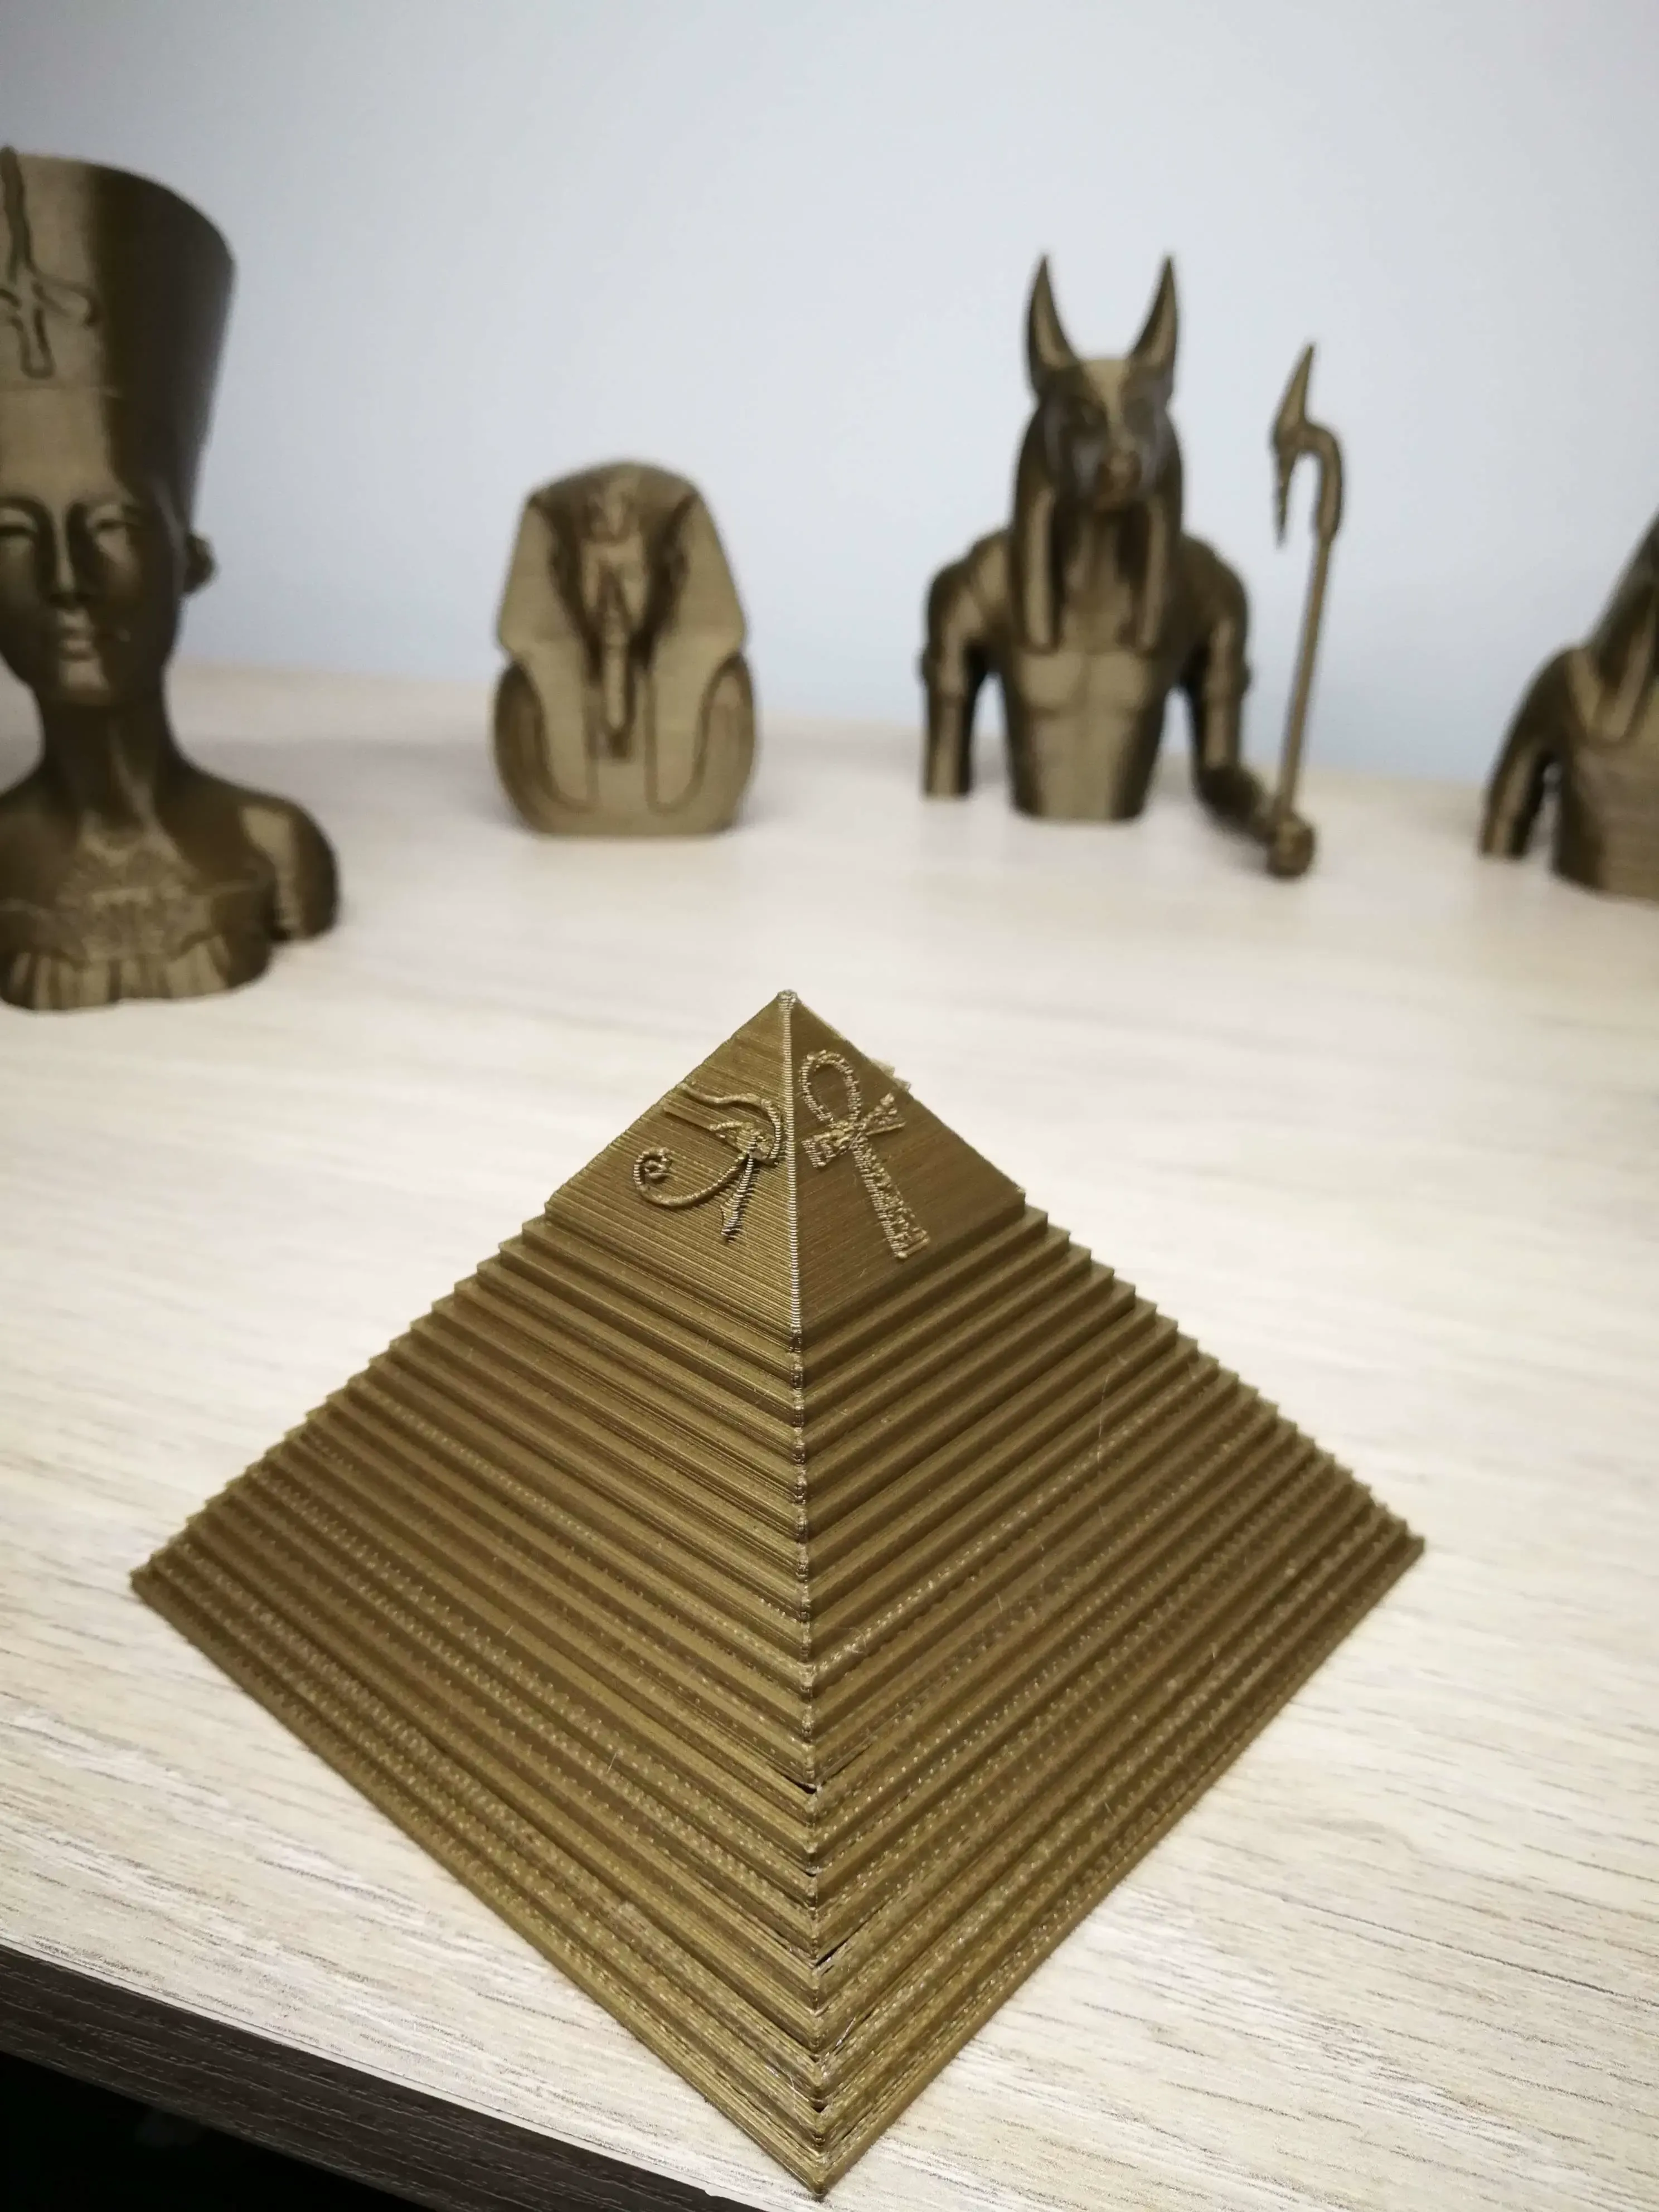 Golden Pyramid Egipt